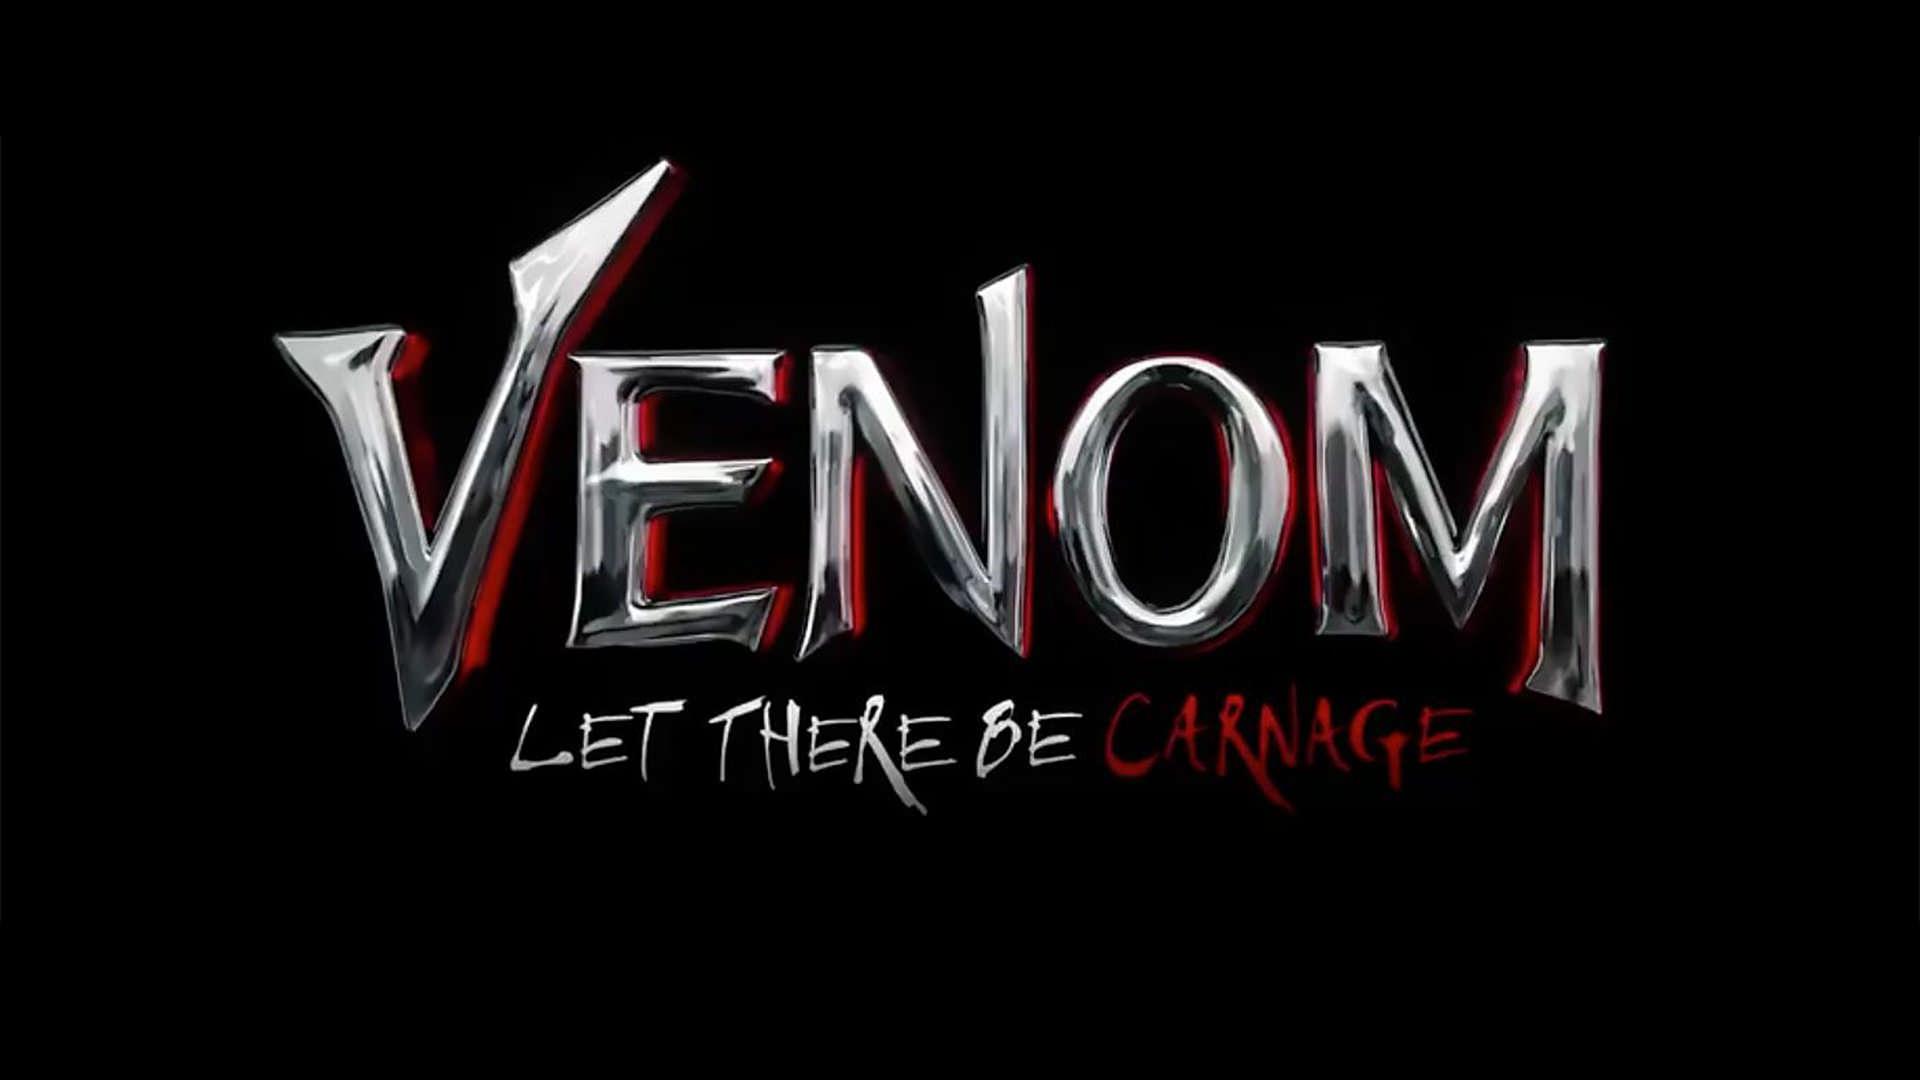 عقب افتادن یک هفته ای اکران فیلم Venom 2 با بازی تام هاردی